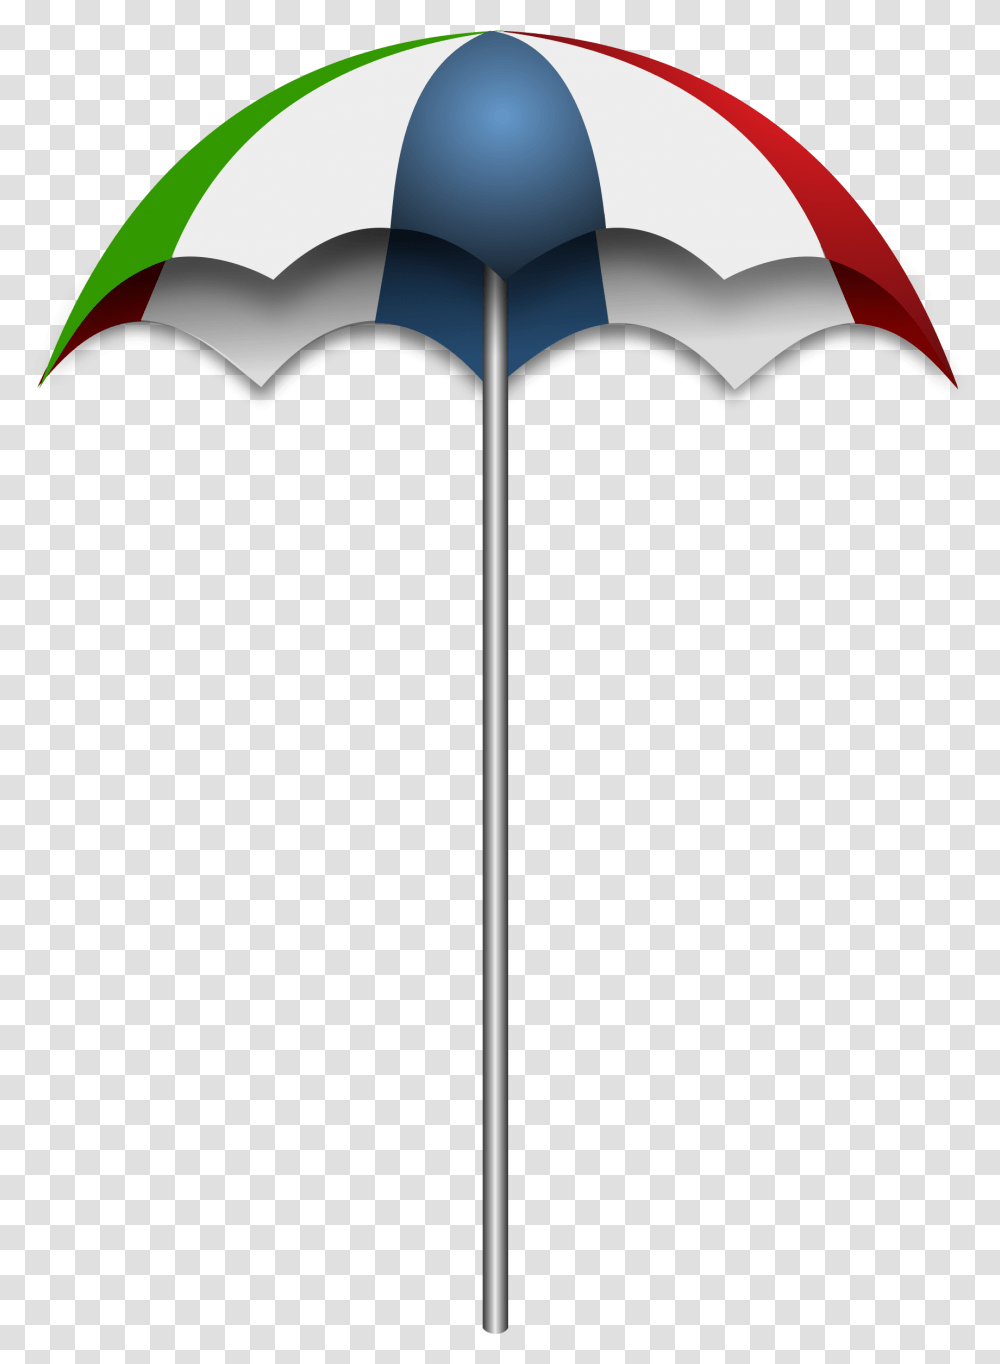 Beach Umbrella Remix Clip Arts, Canopy, Patio Umbrella, Garden Umbrella, Axe Transparent Png